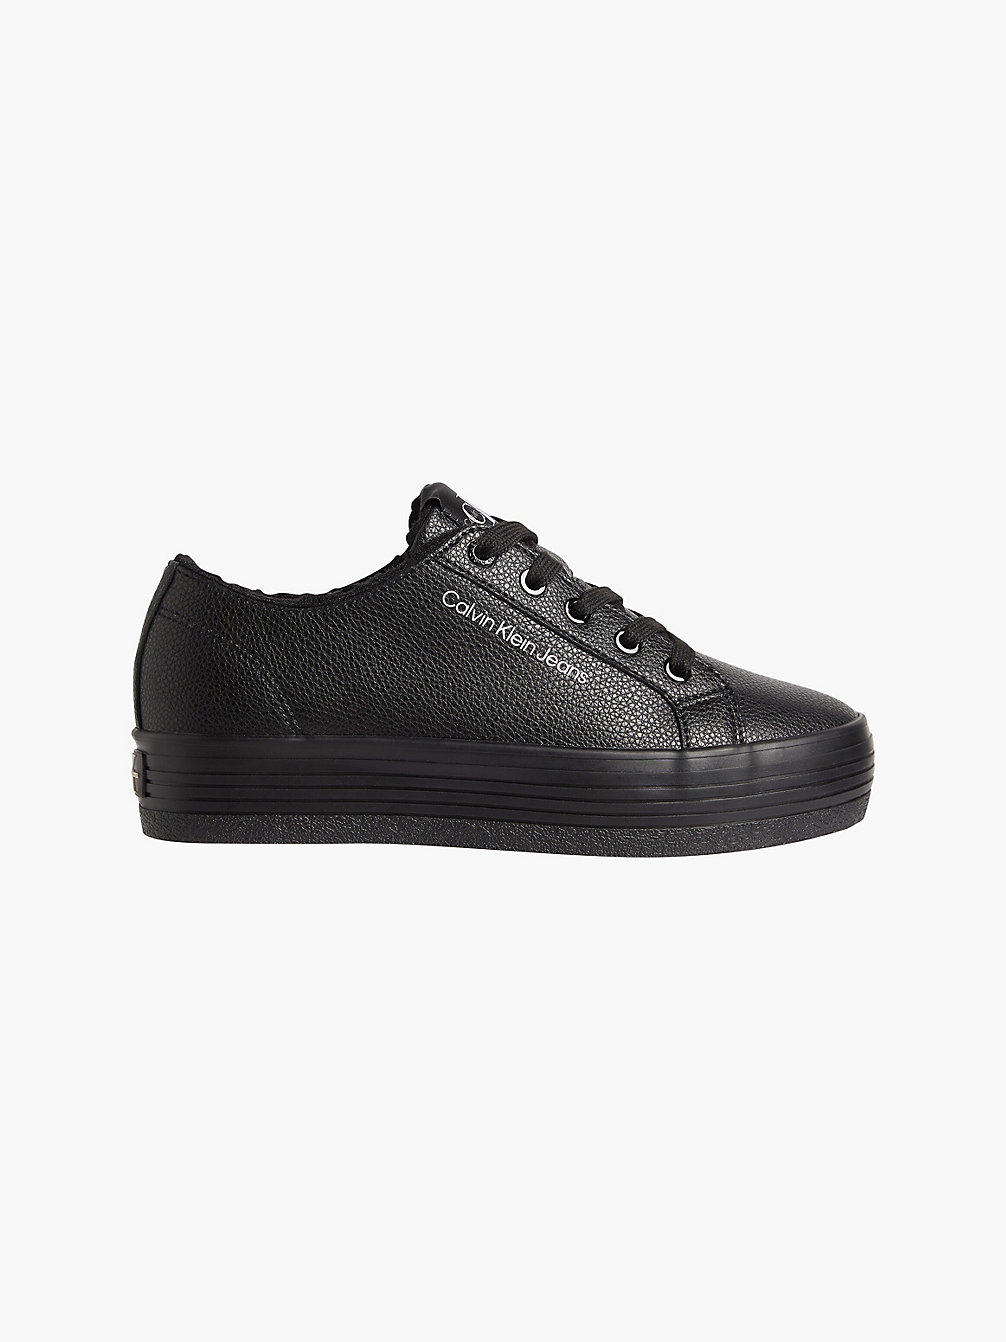 BLACK Plateau-Sneakers Aus Leder undefined Damen Calvin Klein